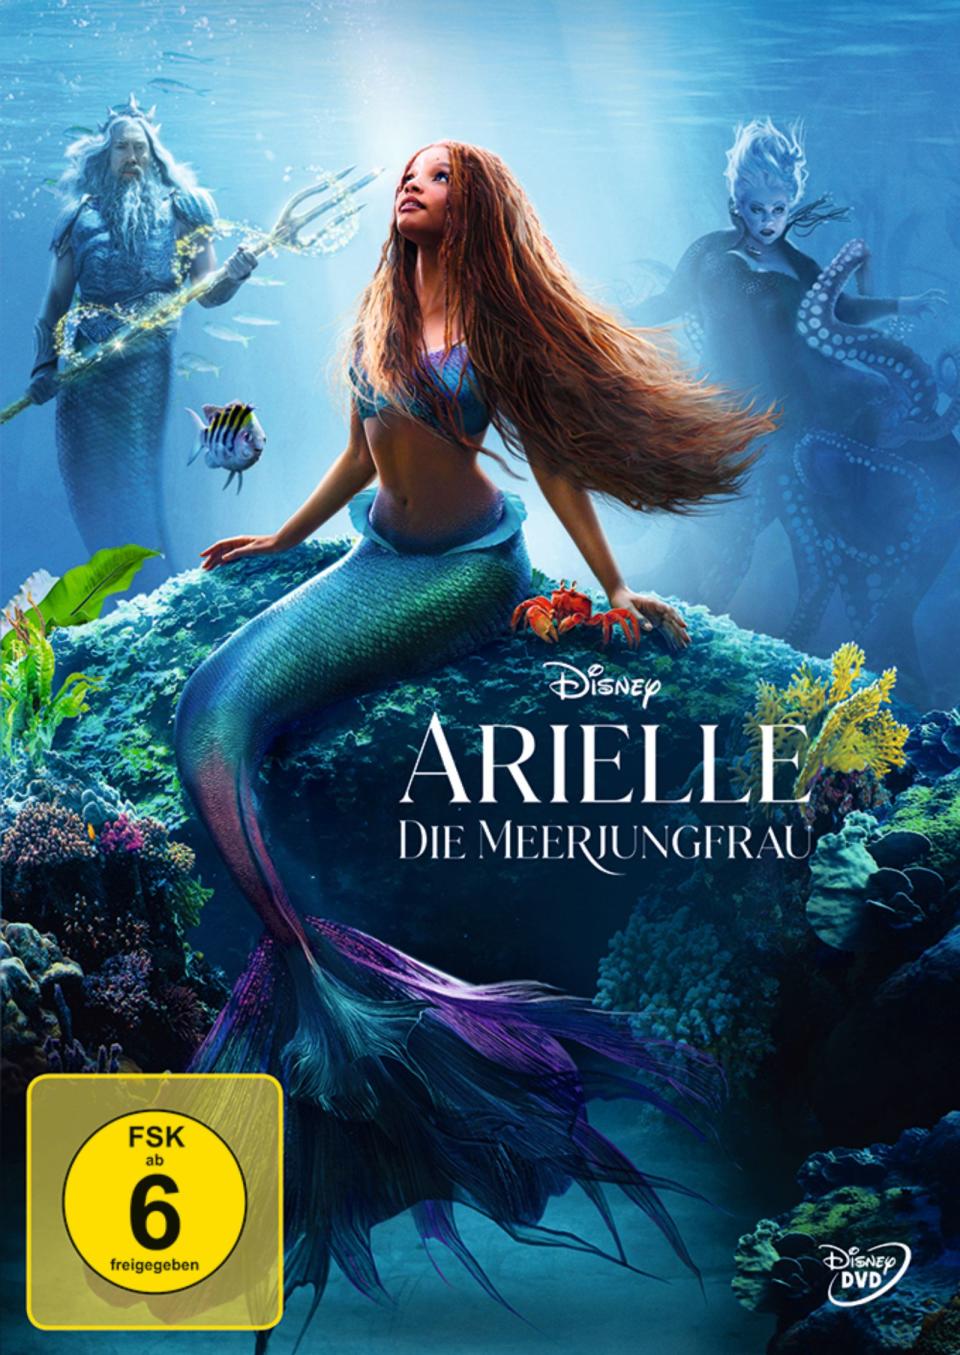 Die Neuverfilmung von "Arielle, die Meerjungfrau" sorgte schon im Vorfeld für einige Aufregung. (Bild: Disney)